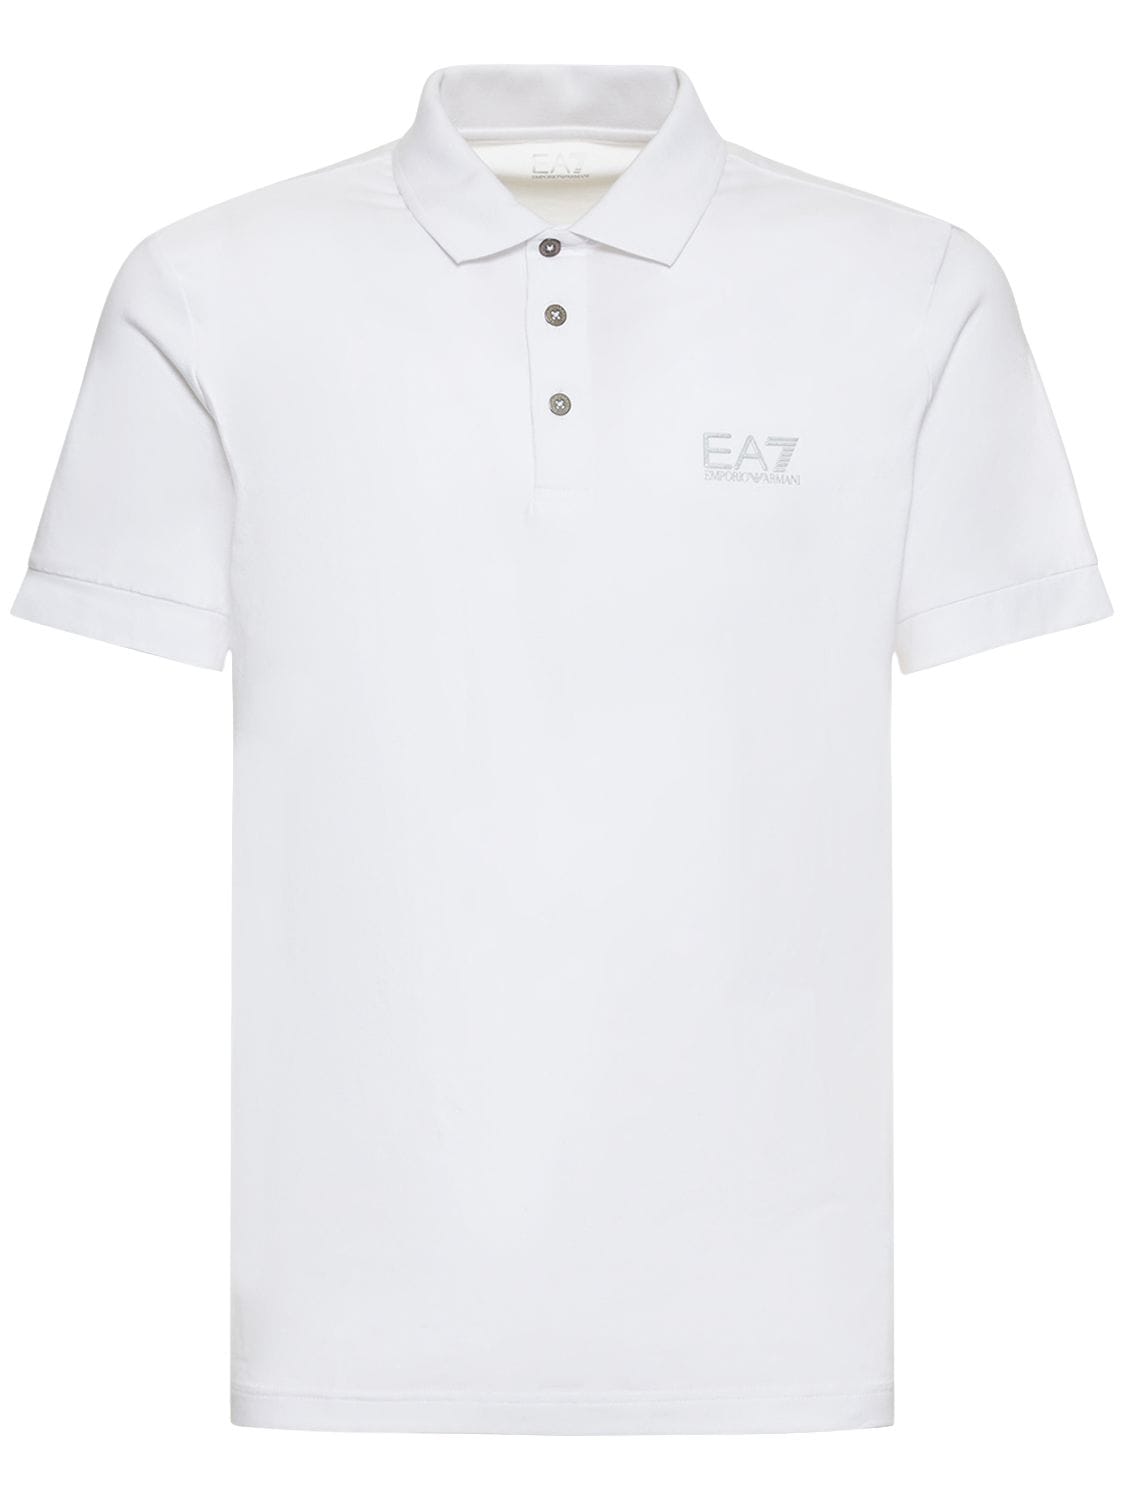 Ea7 Core Identity Cotton Jersey Polo In White,silver